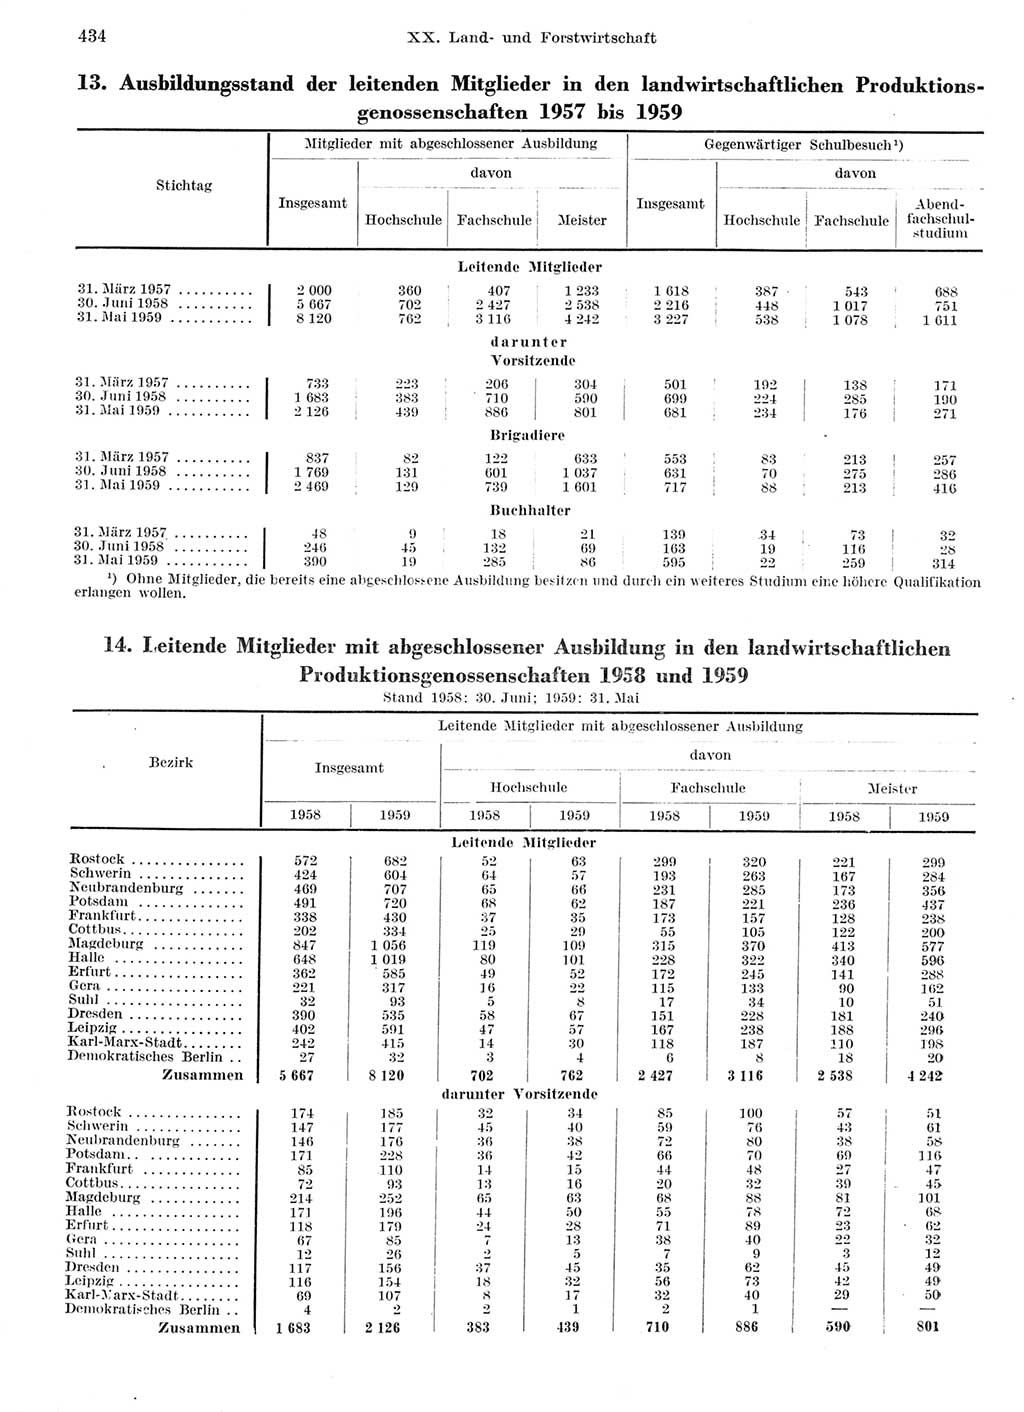 Statistisches Jahrbuch der Deutschen Demokratischen Republik (DDR) 1959, Seite 434 (Stat. Jb. DDR 1959, S. 434)